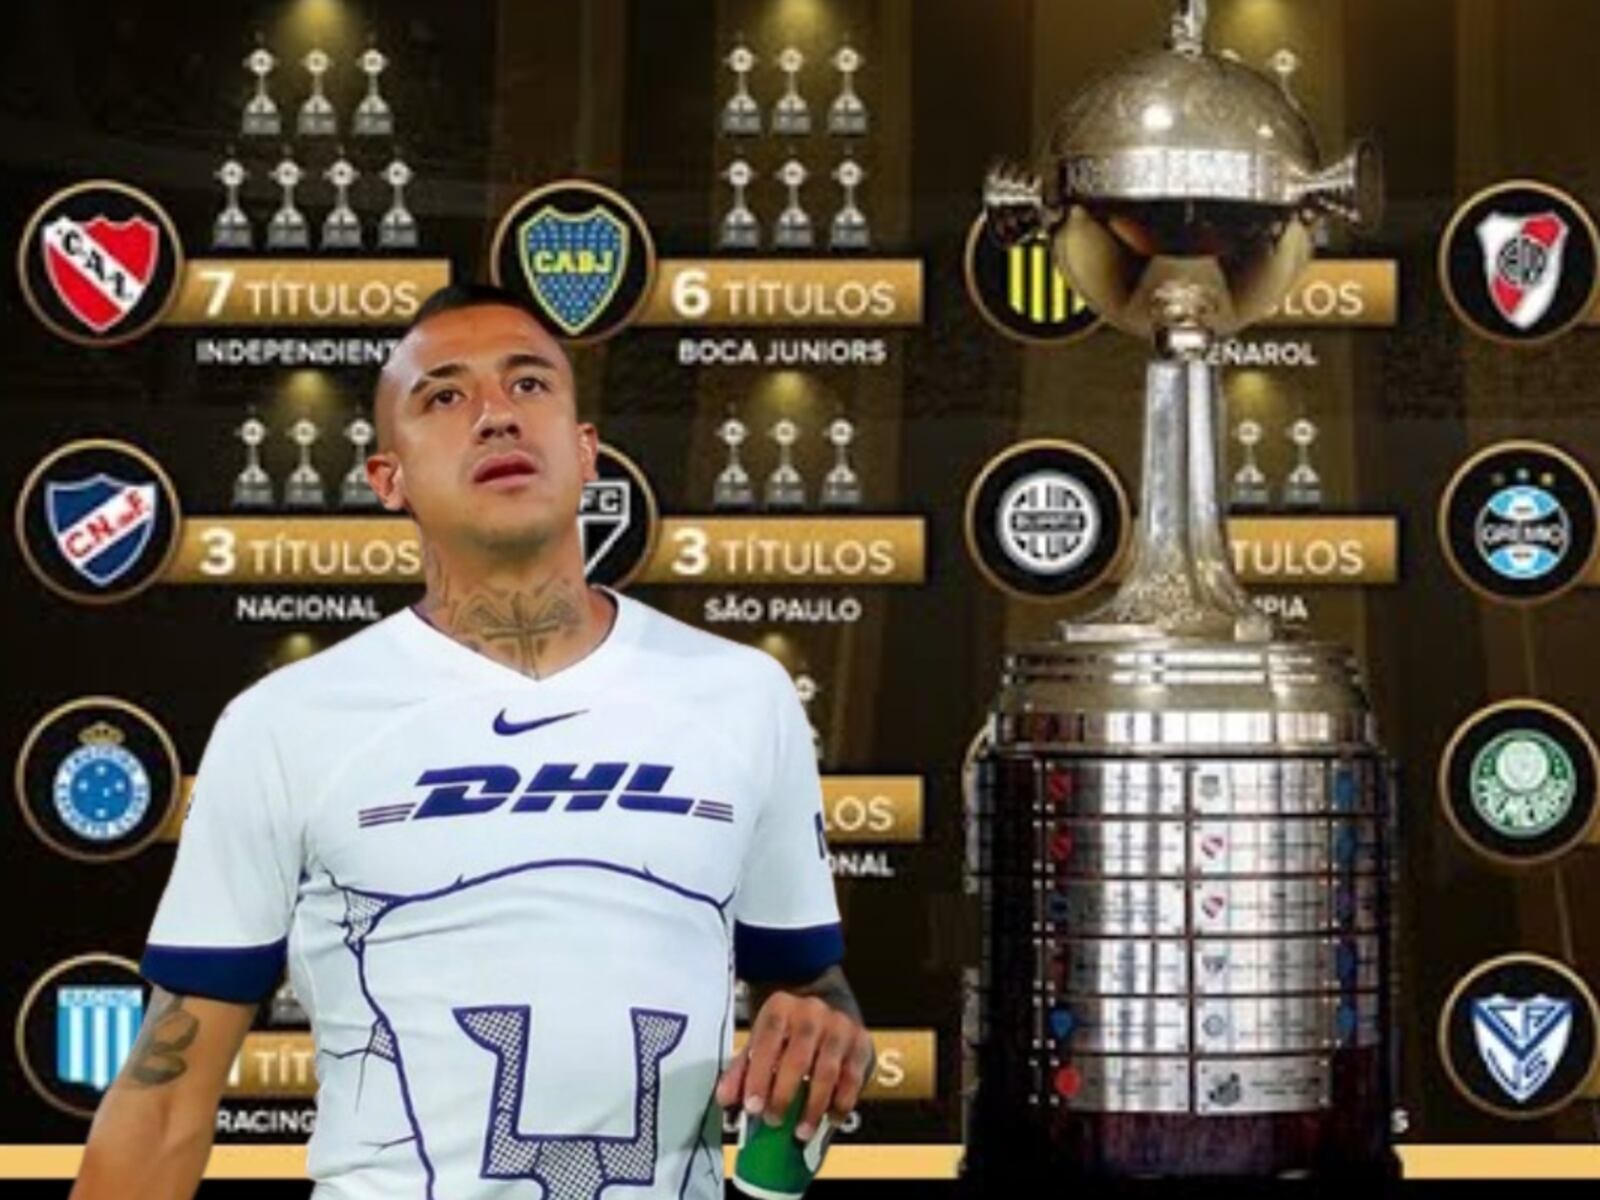 Tiembla Ergas, Pumas ficharía a un crack que juega en un campeón de Libertadores